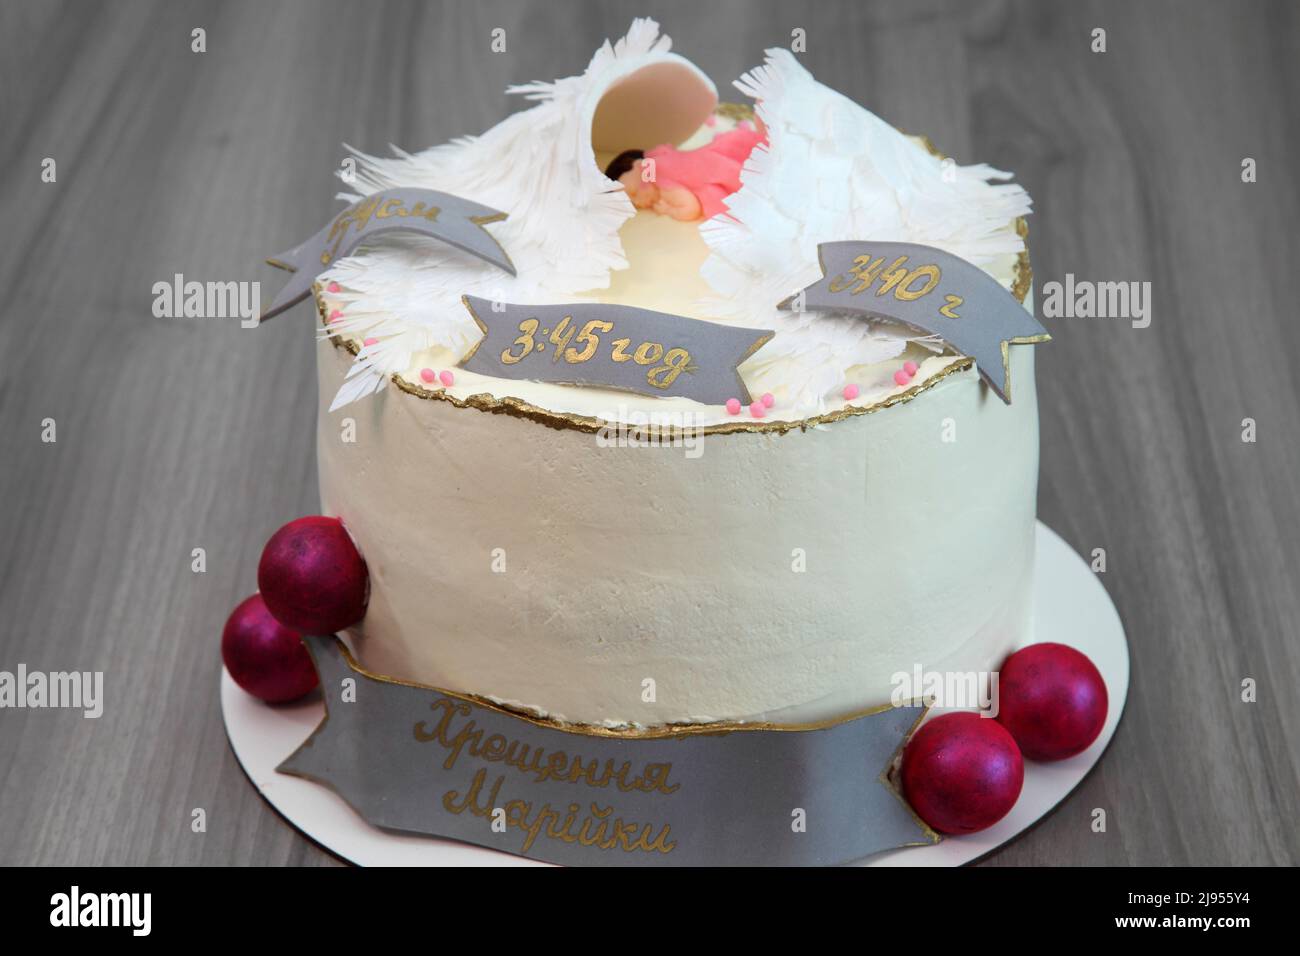 Gâteau de fête pour l'anniversaire d'un enfant. L'inscription sur le gâteau: Avec le nom, la date et l'heure de naissance, la taille et le poids de l'enfant. Très beau bab Banque D'Images